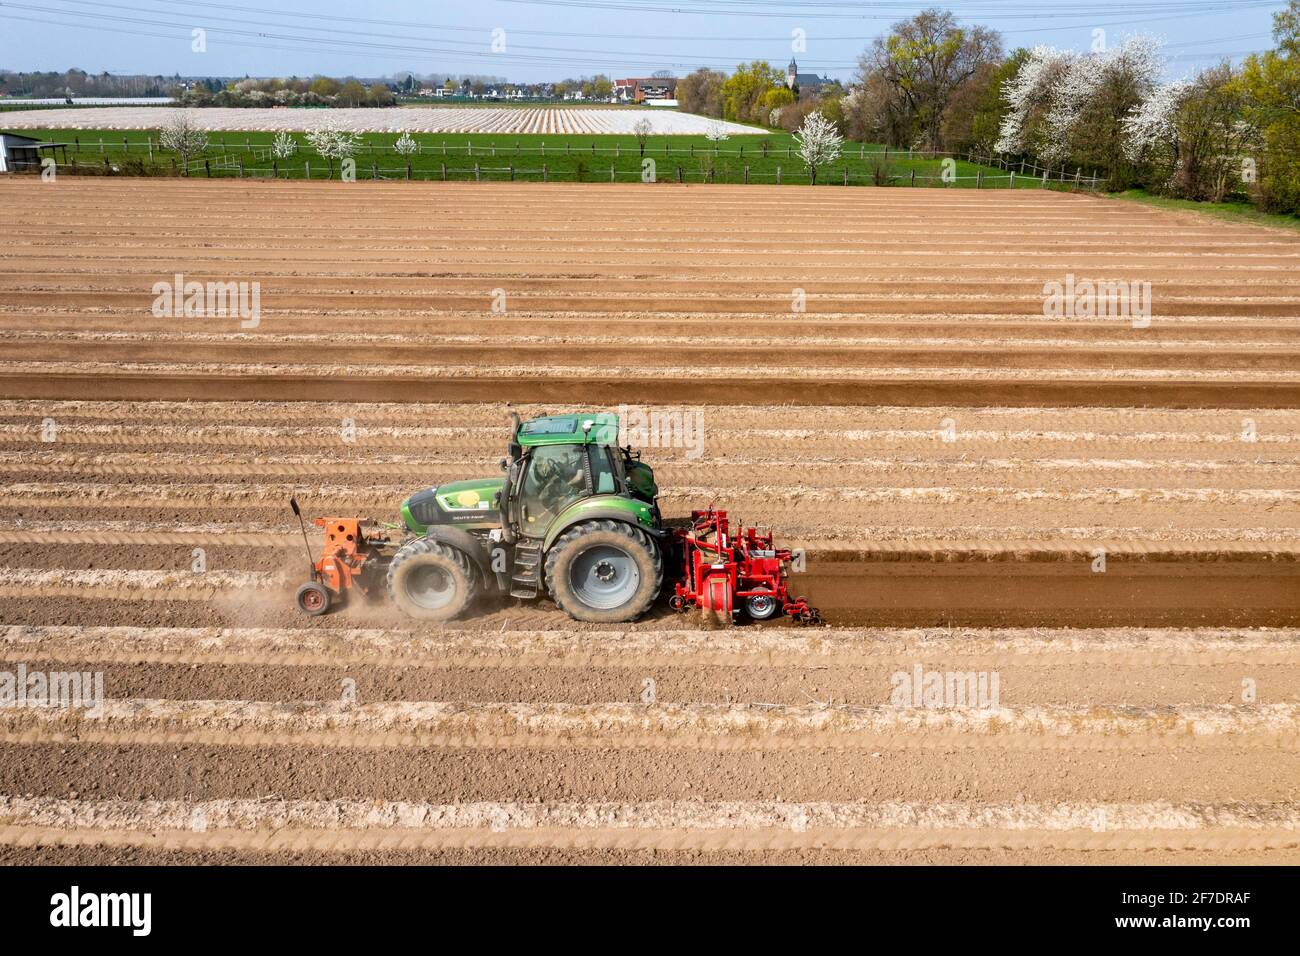 Ein Landwirt baut Spargelkämme auf einem Feld mit Hilfe eines Spargelkämmers, in dem der Spargel dann wächst, Dormagen, NRW, Deutschland Stockfoto